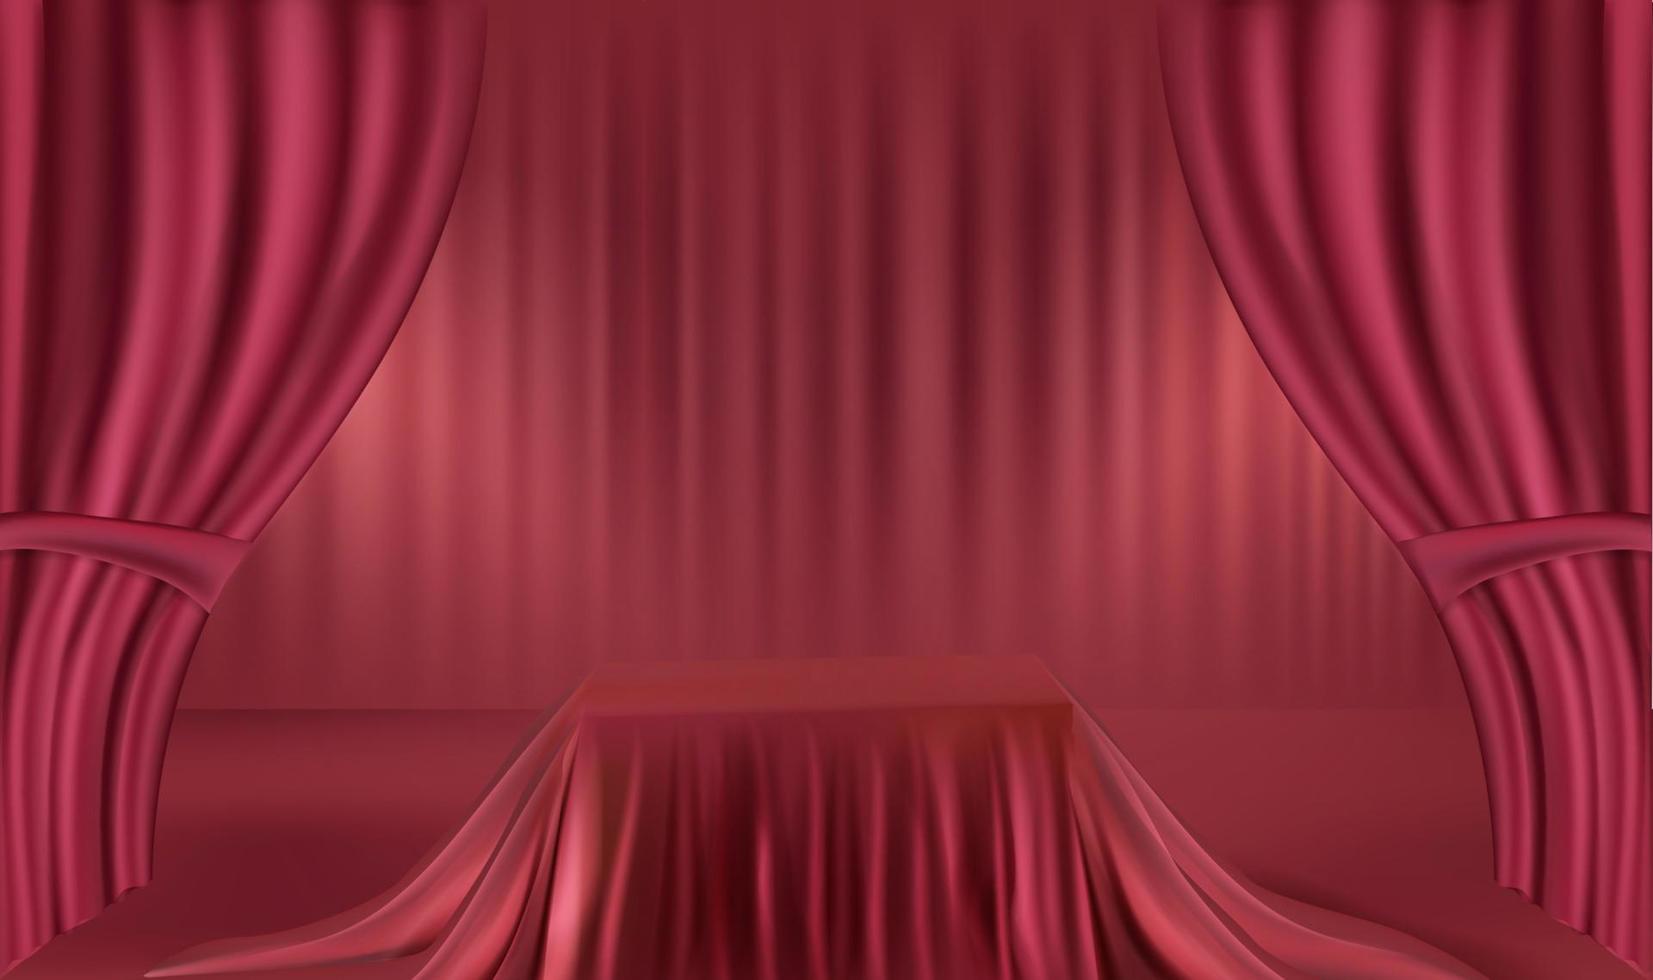 Podio realista rojo con cortina roja, exhibición de productos, presentación, publicidad. vector